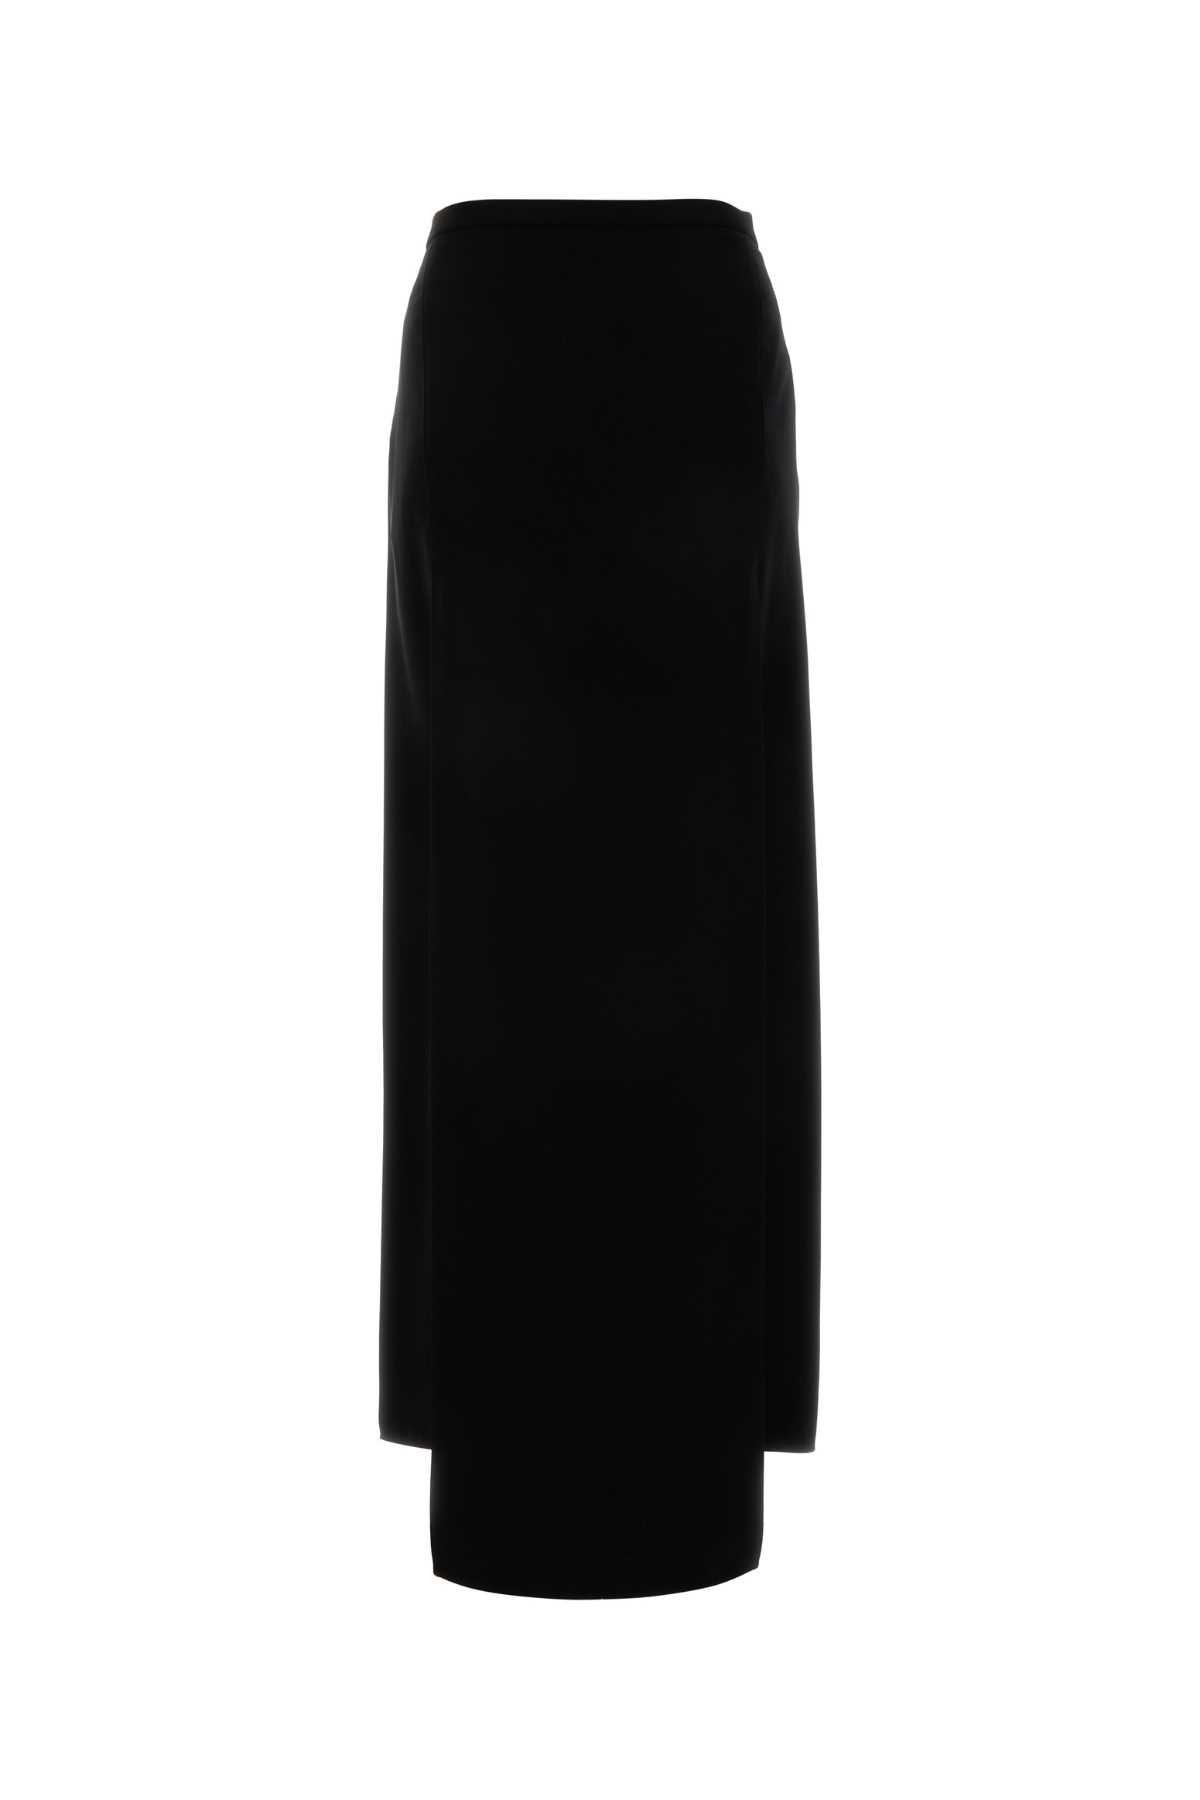 Shop Courrèges Black Crepe Heritage Tech Skirt